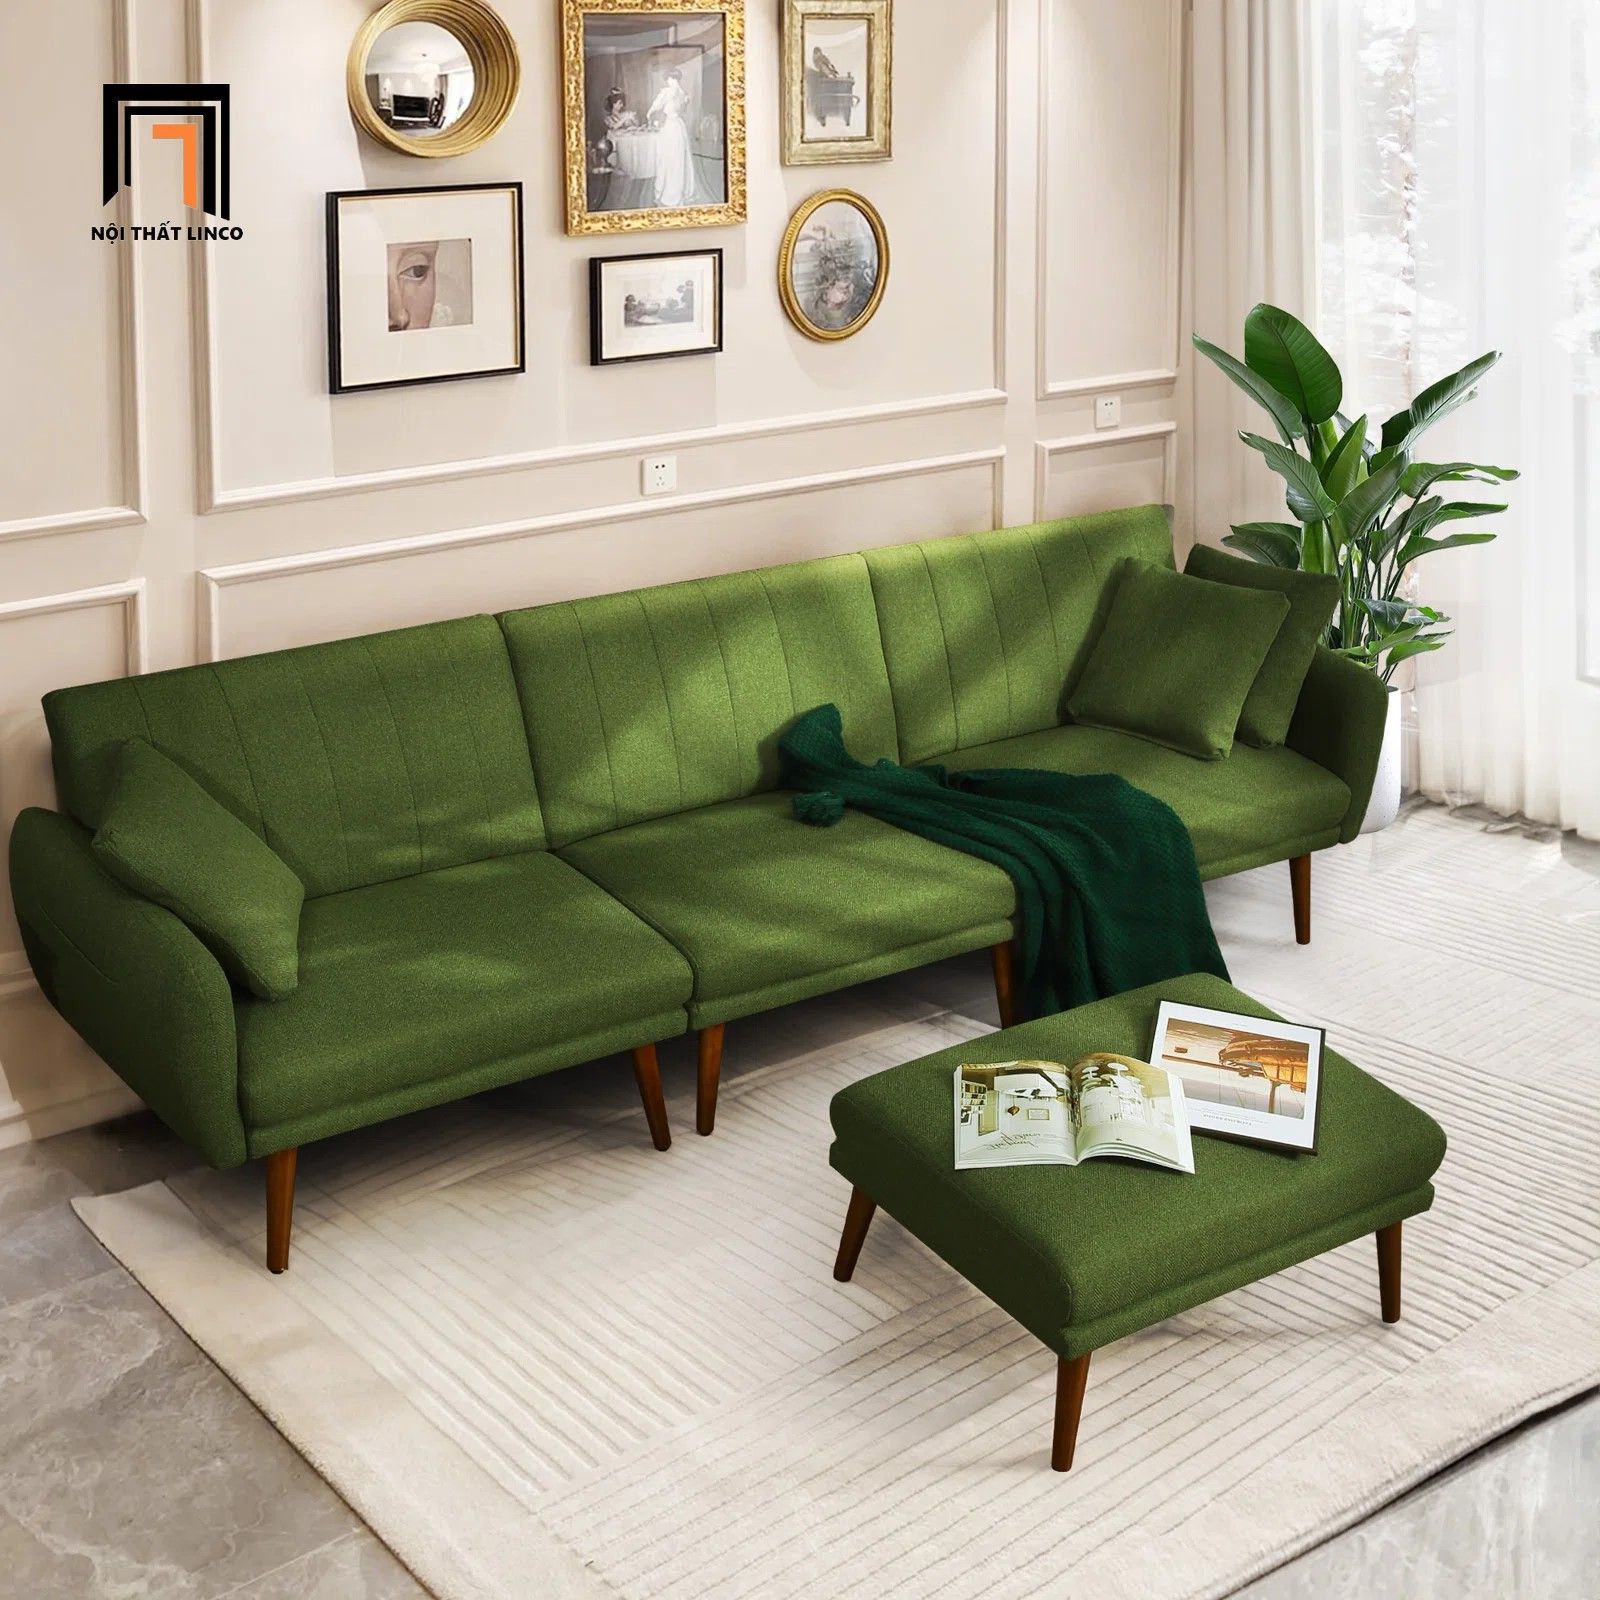  Ghế sofa giường nhiều ghế ghép lại GB72 Kelisha dài 2m6 xanh lá 